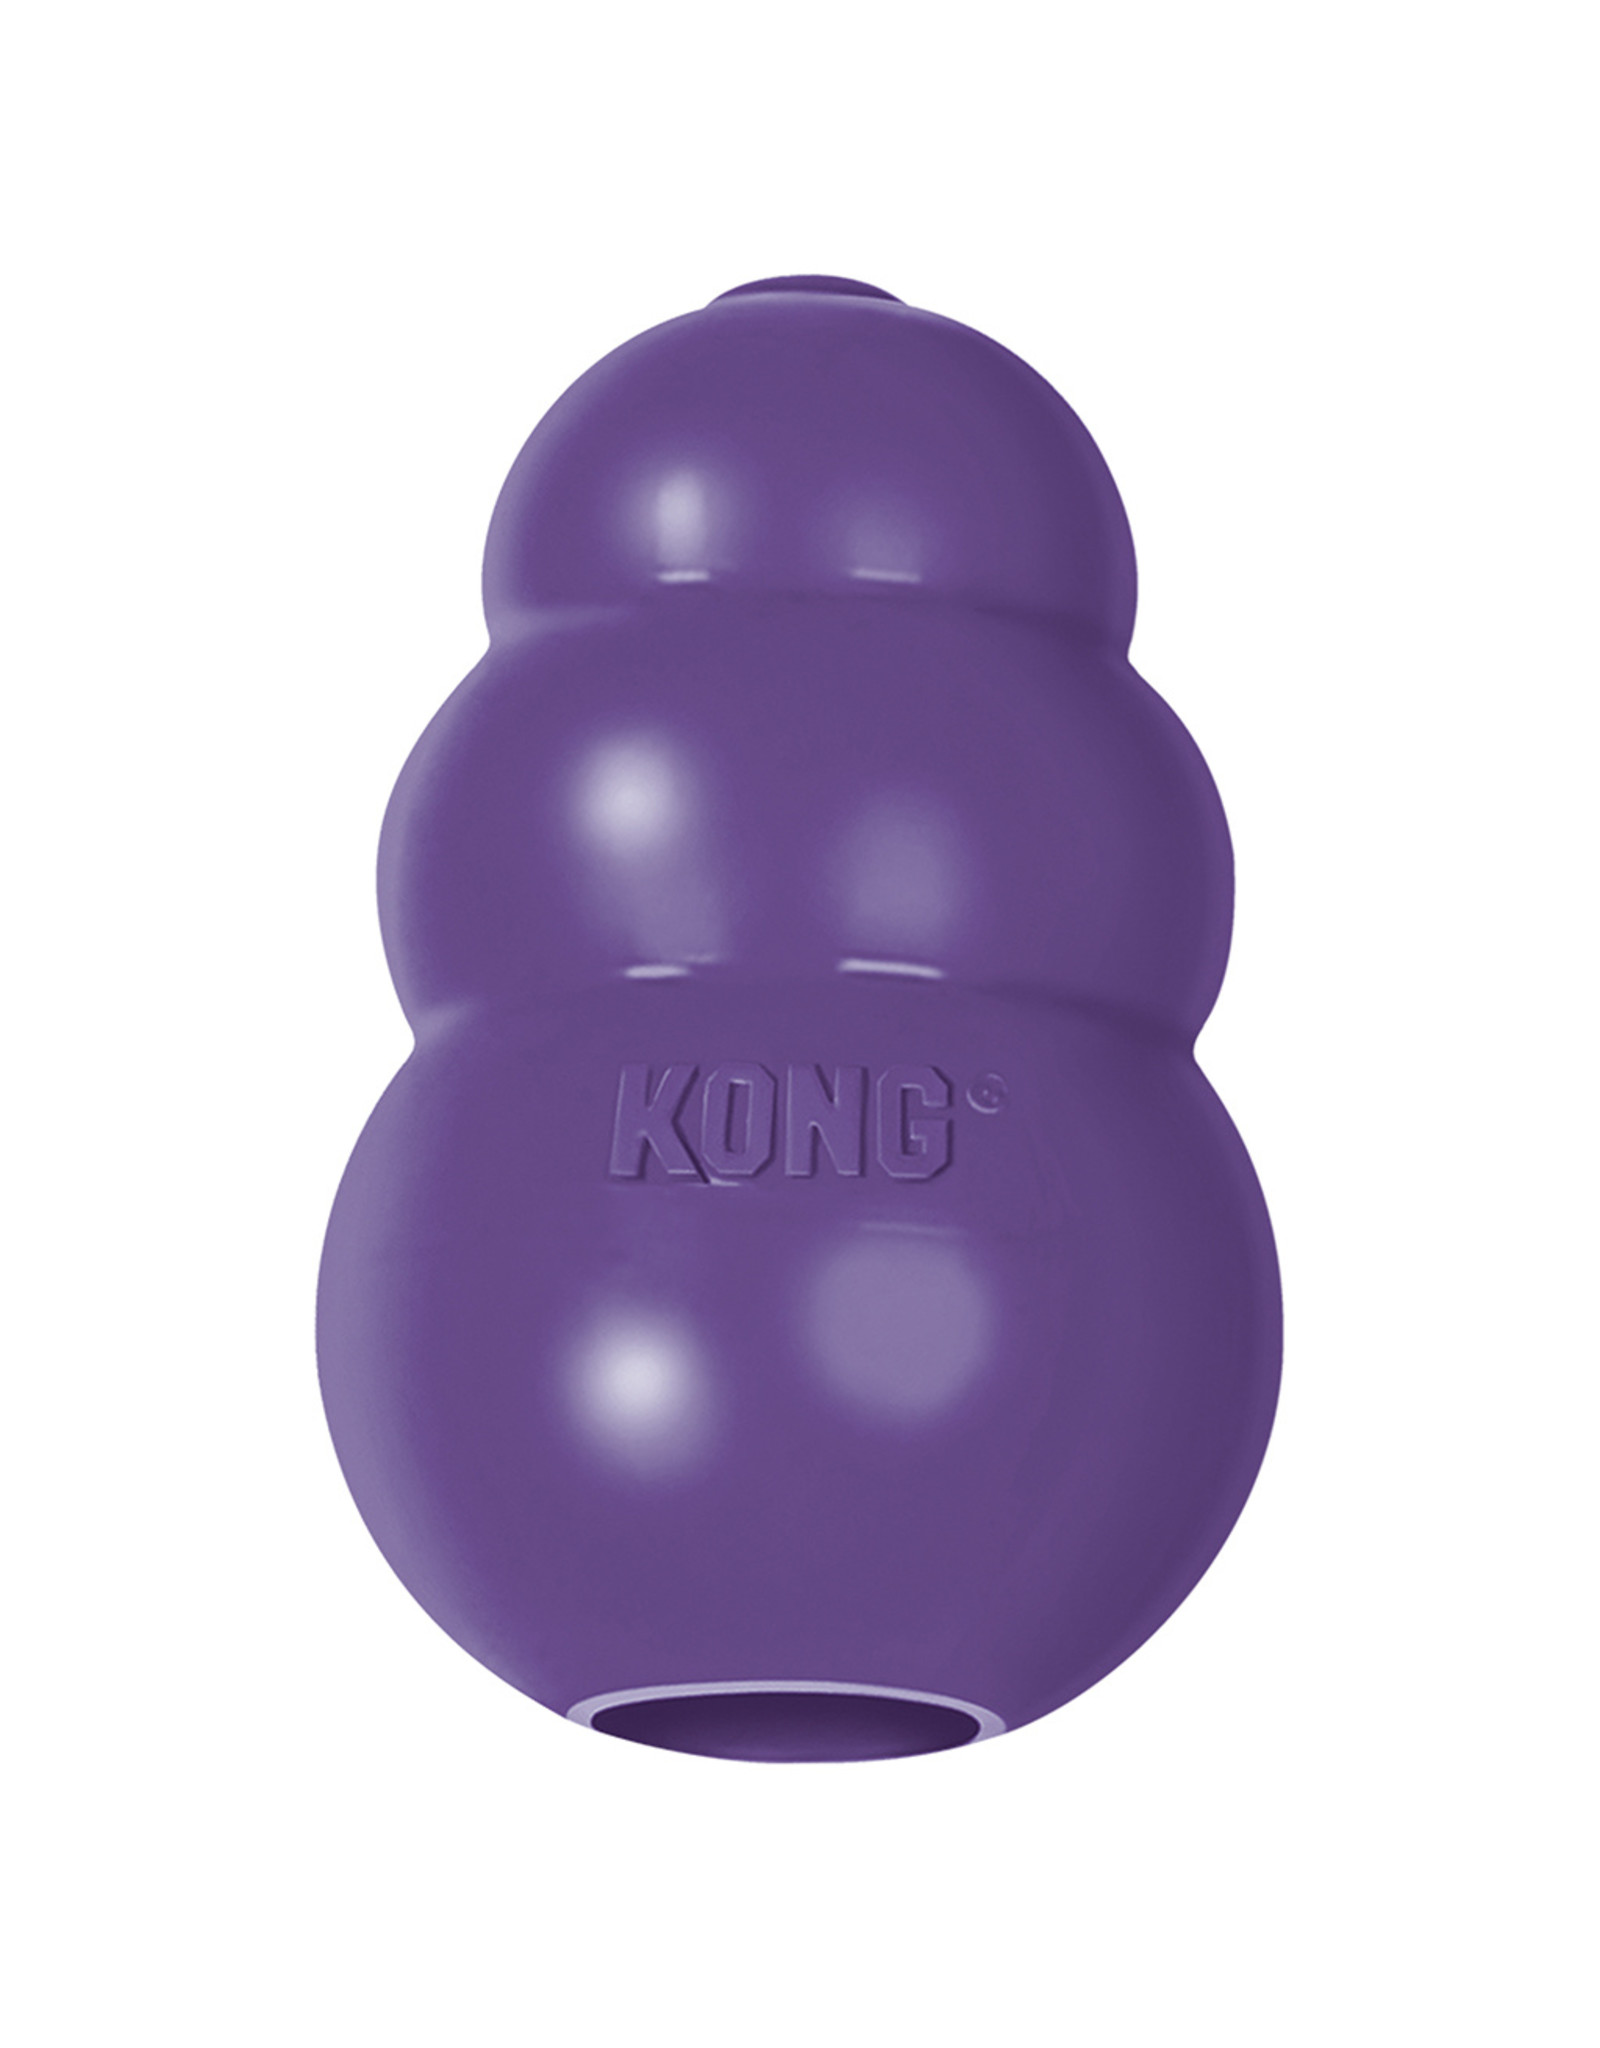 Kong Senior Purple Large